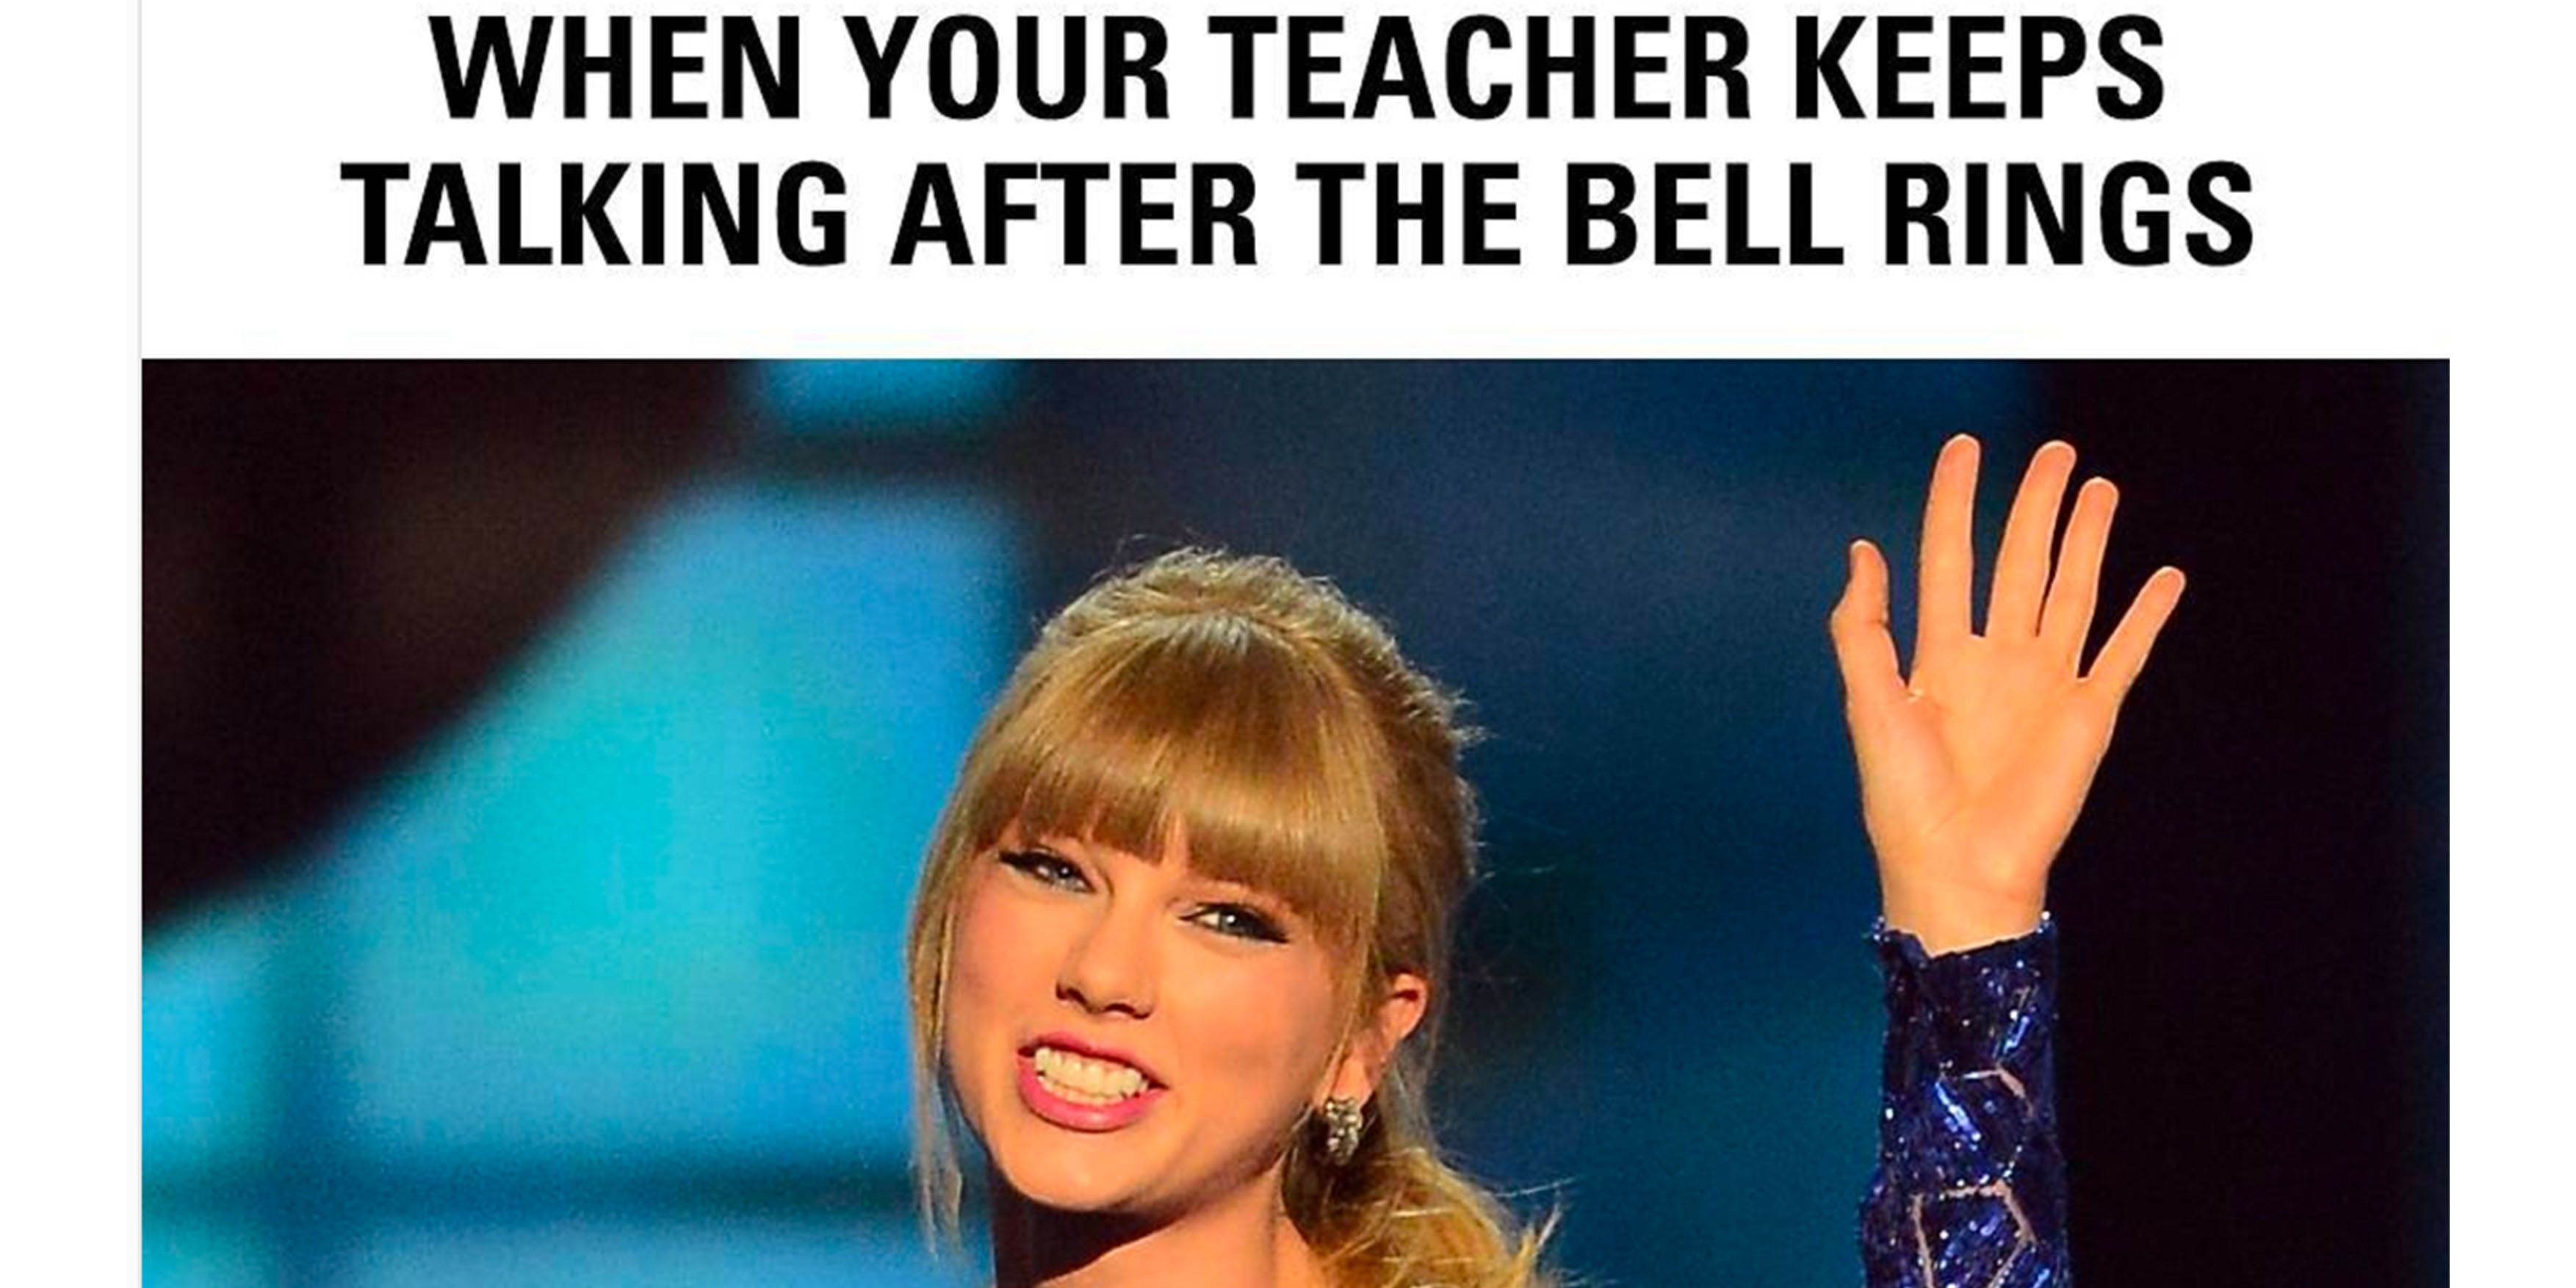 Teacher Funny Meme